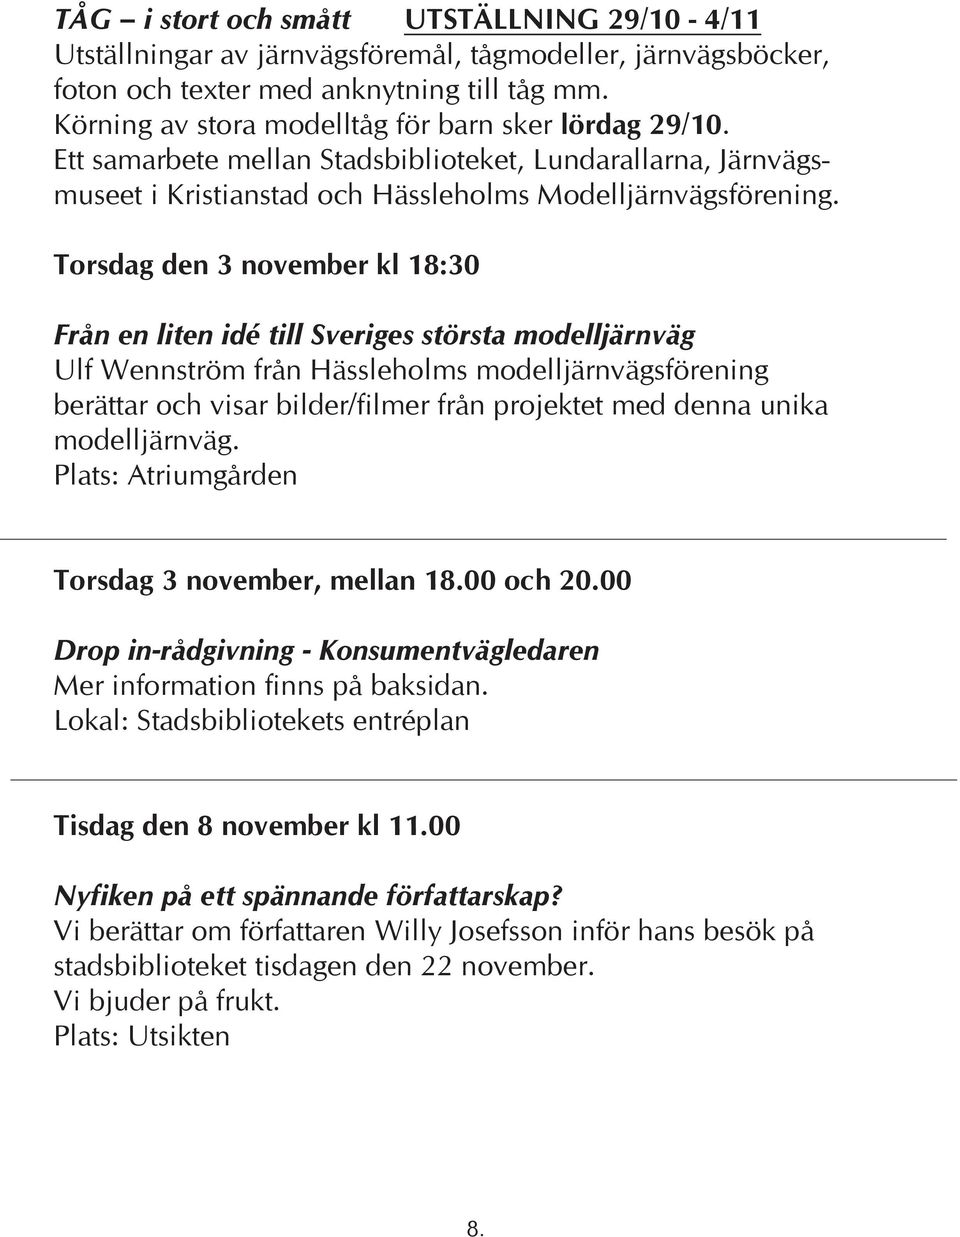 Torsdag den 3 november kl 18:30 Från en liten idé till Sveriges största modelljärnväg Ulf Wennström från Hässleholms modelljärnvägsförening berättar och visar bilder/filmer från projektet med denna